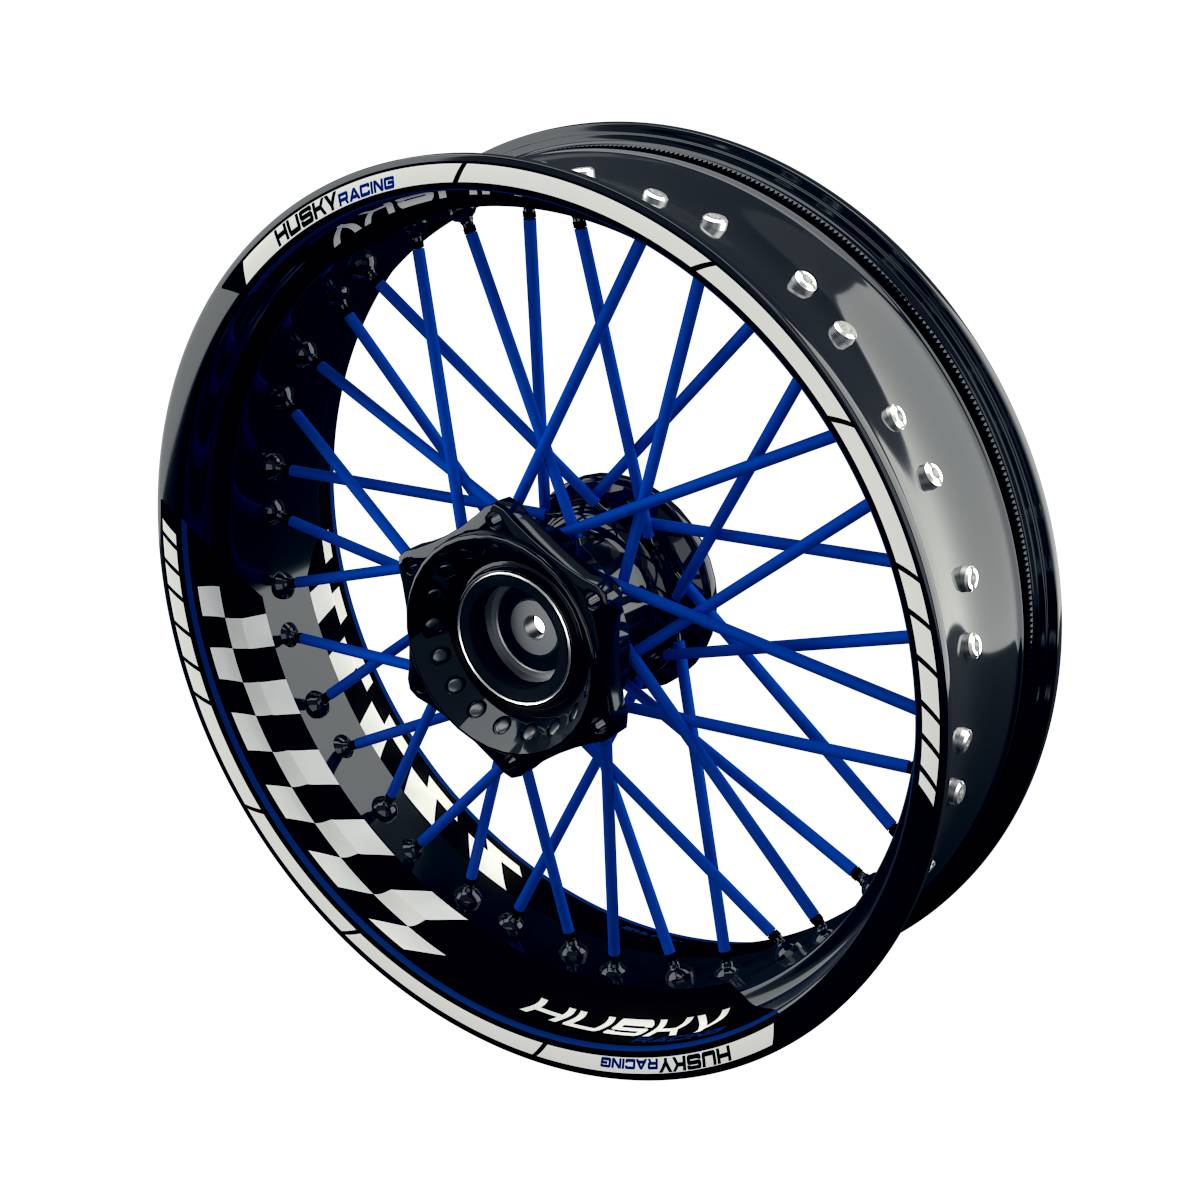 HUSKY Racing Grid Felgenaufkleber Wheelsticker Premium geteilt